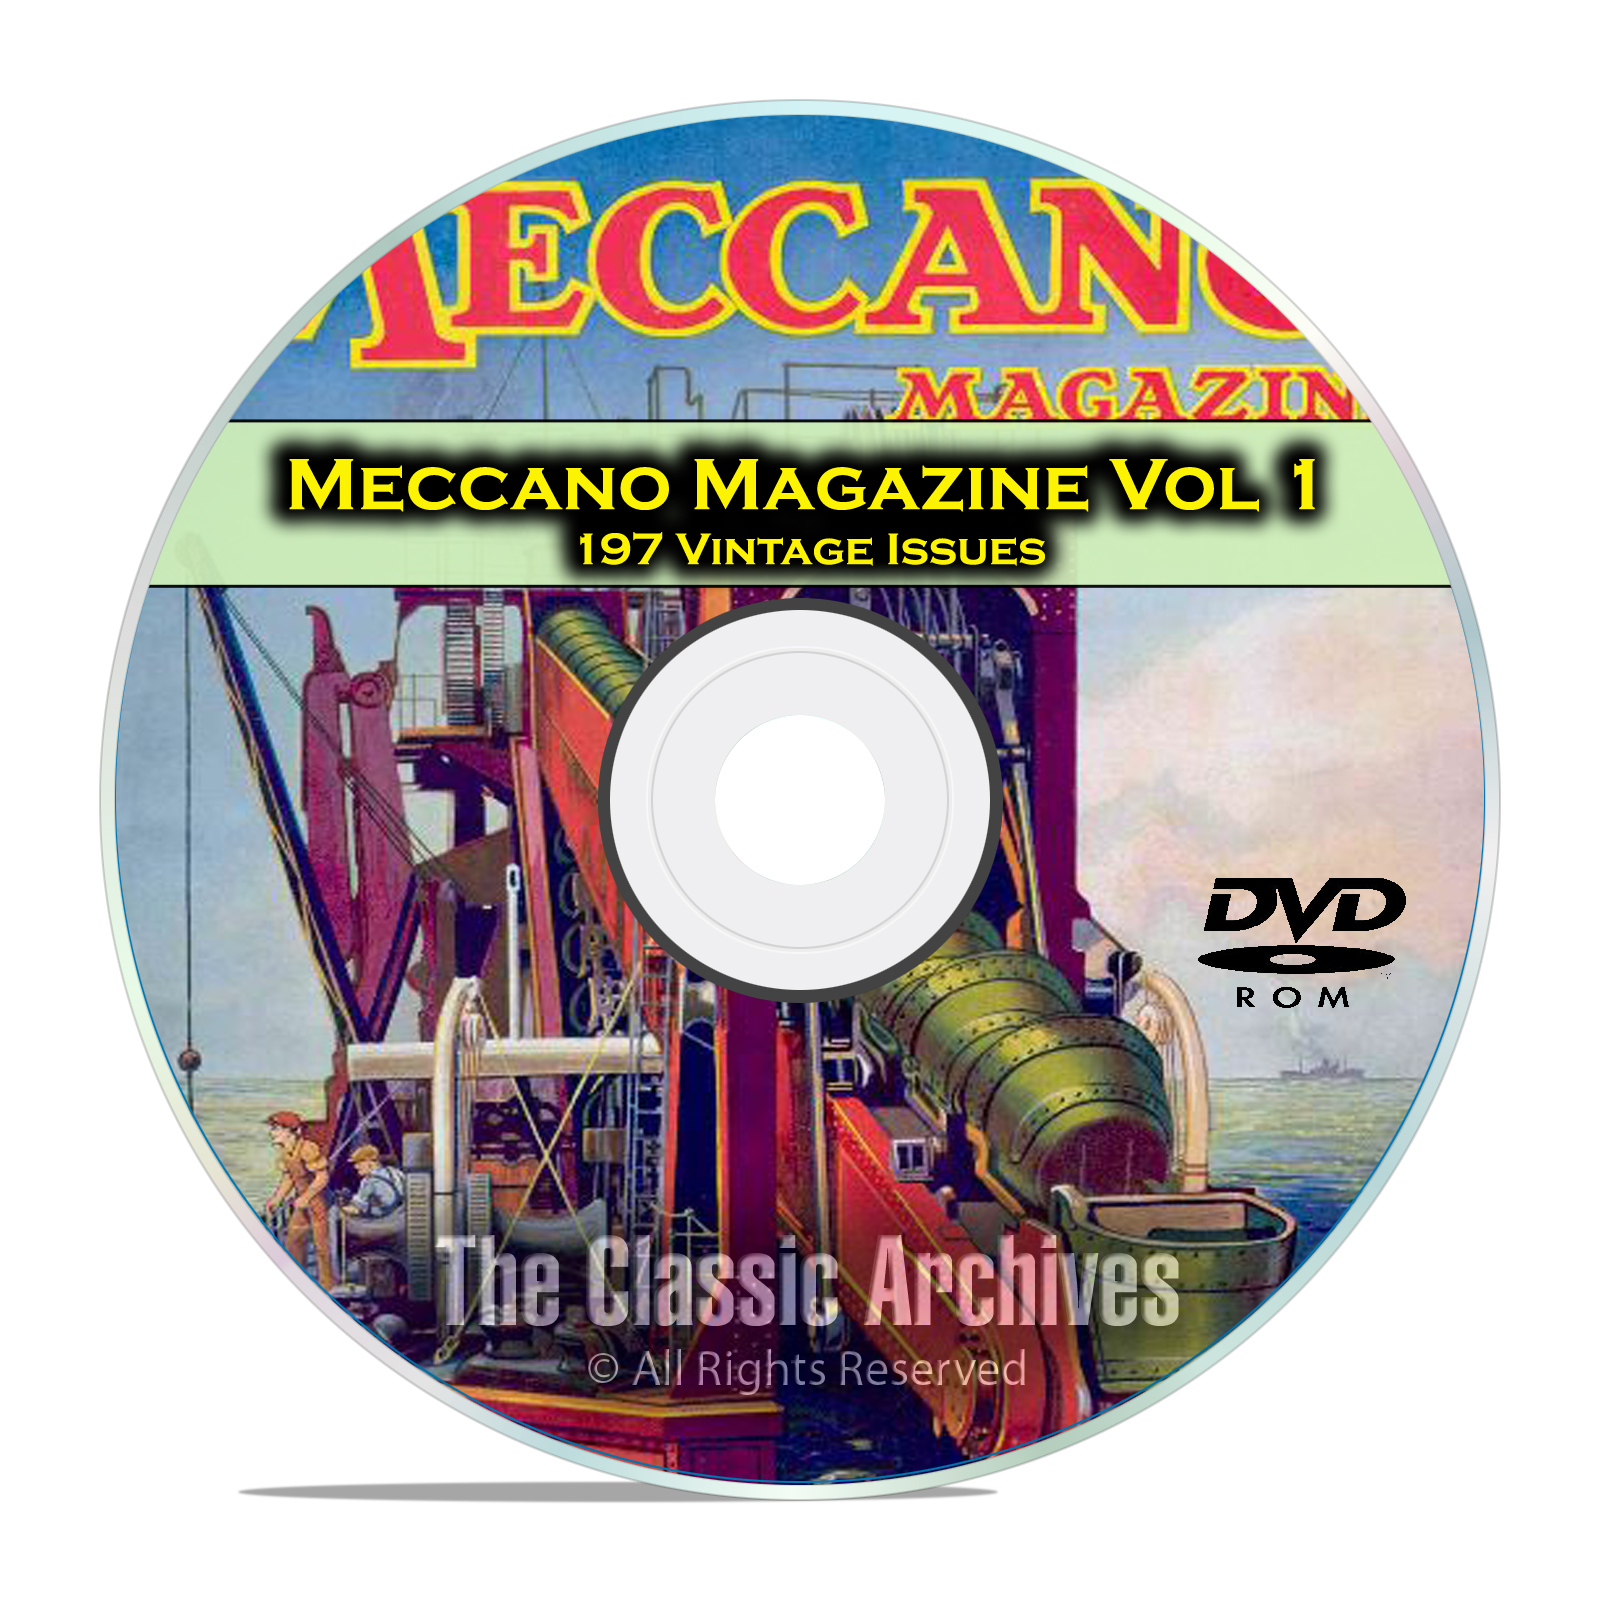 Meccano Magazine Volume 1, 197 Vintage Issues, Boy Hobby Magazine DVD